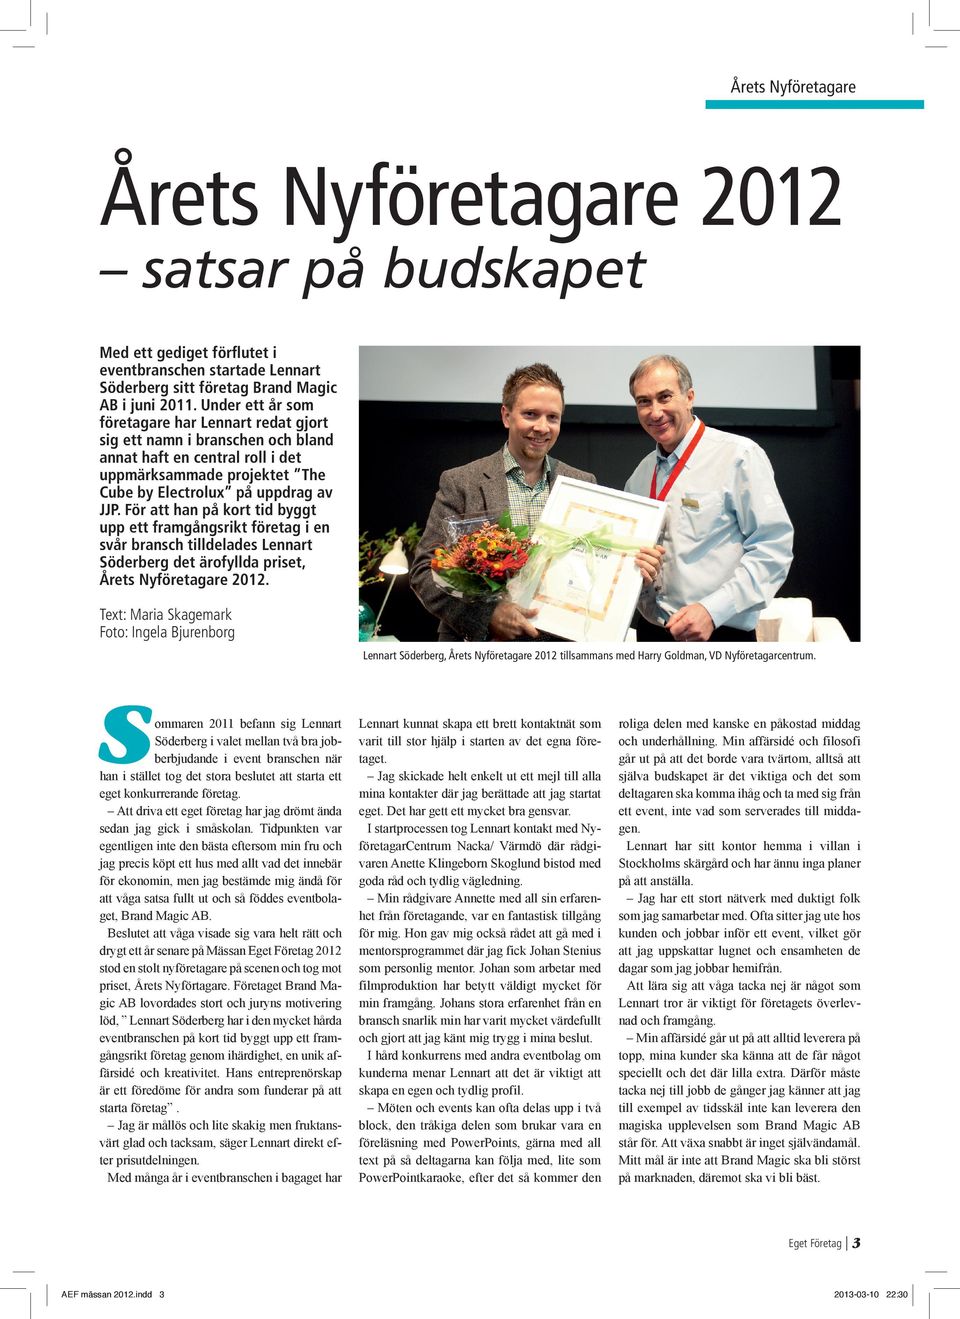 För att han på kort tid byggt upp ett framgångsrikt företag i en svår bransch tilldelades Lennart Söderberg det ärofyllda priset, Årets Nyföretagare 2012.